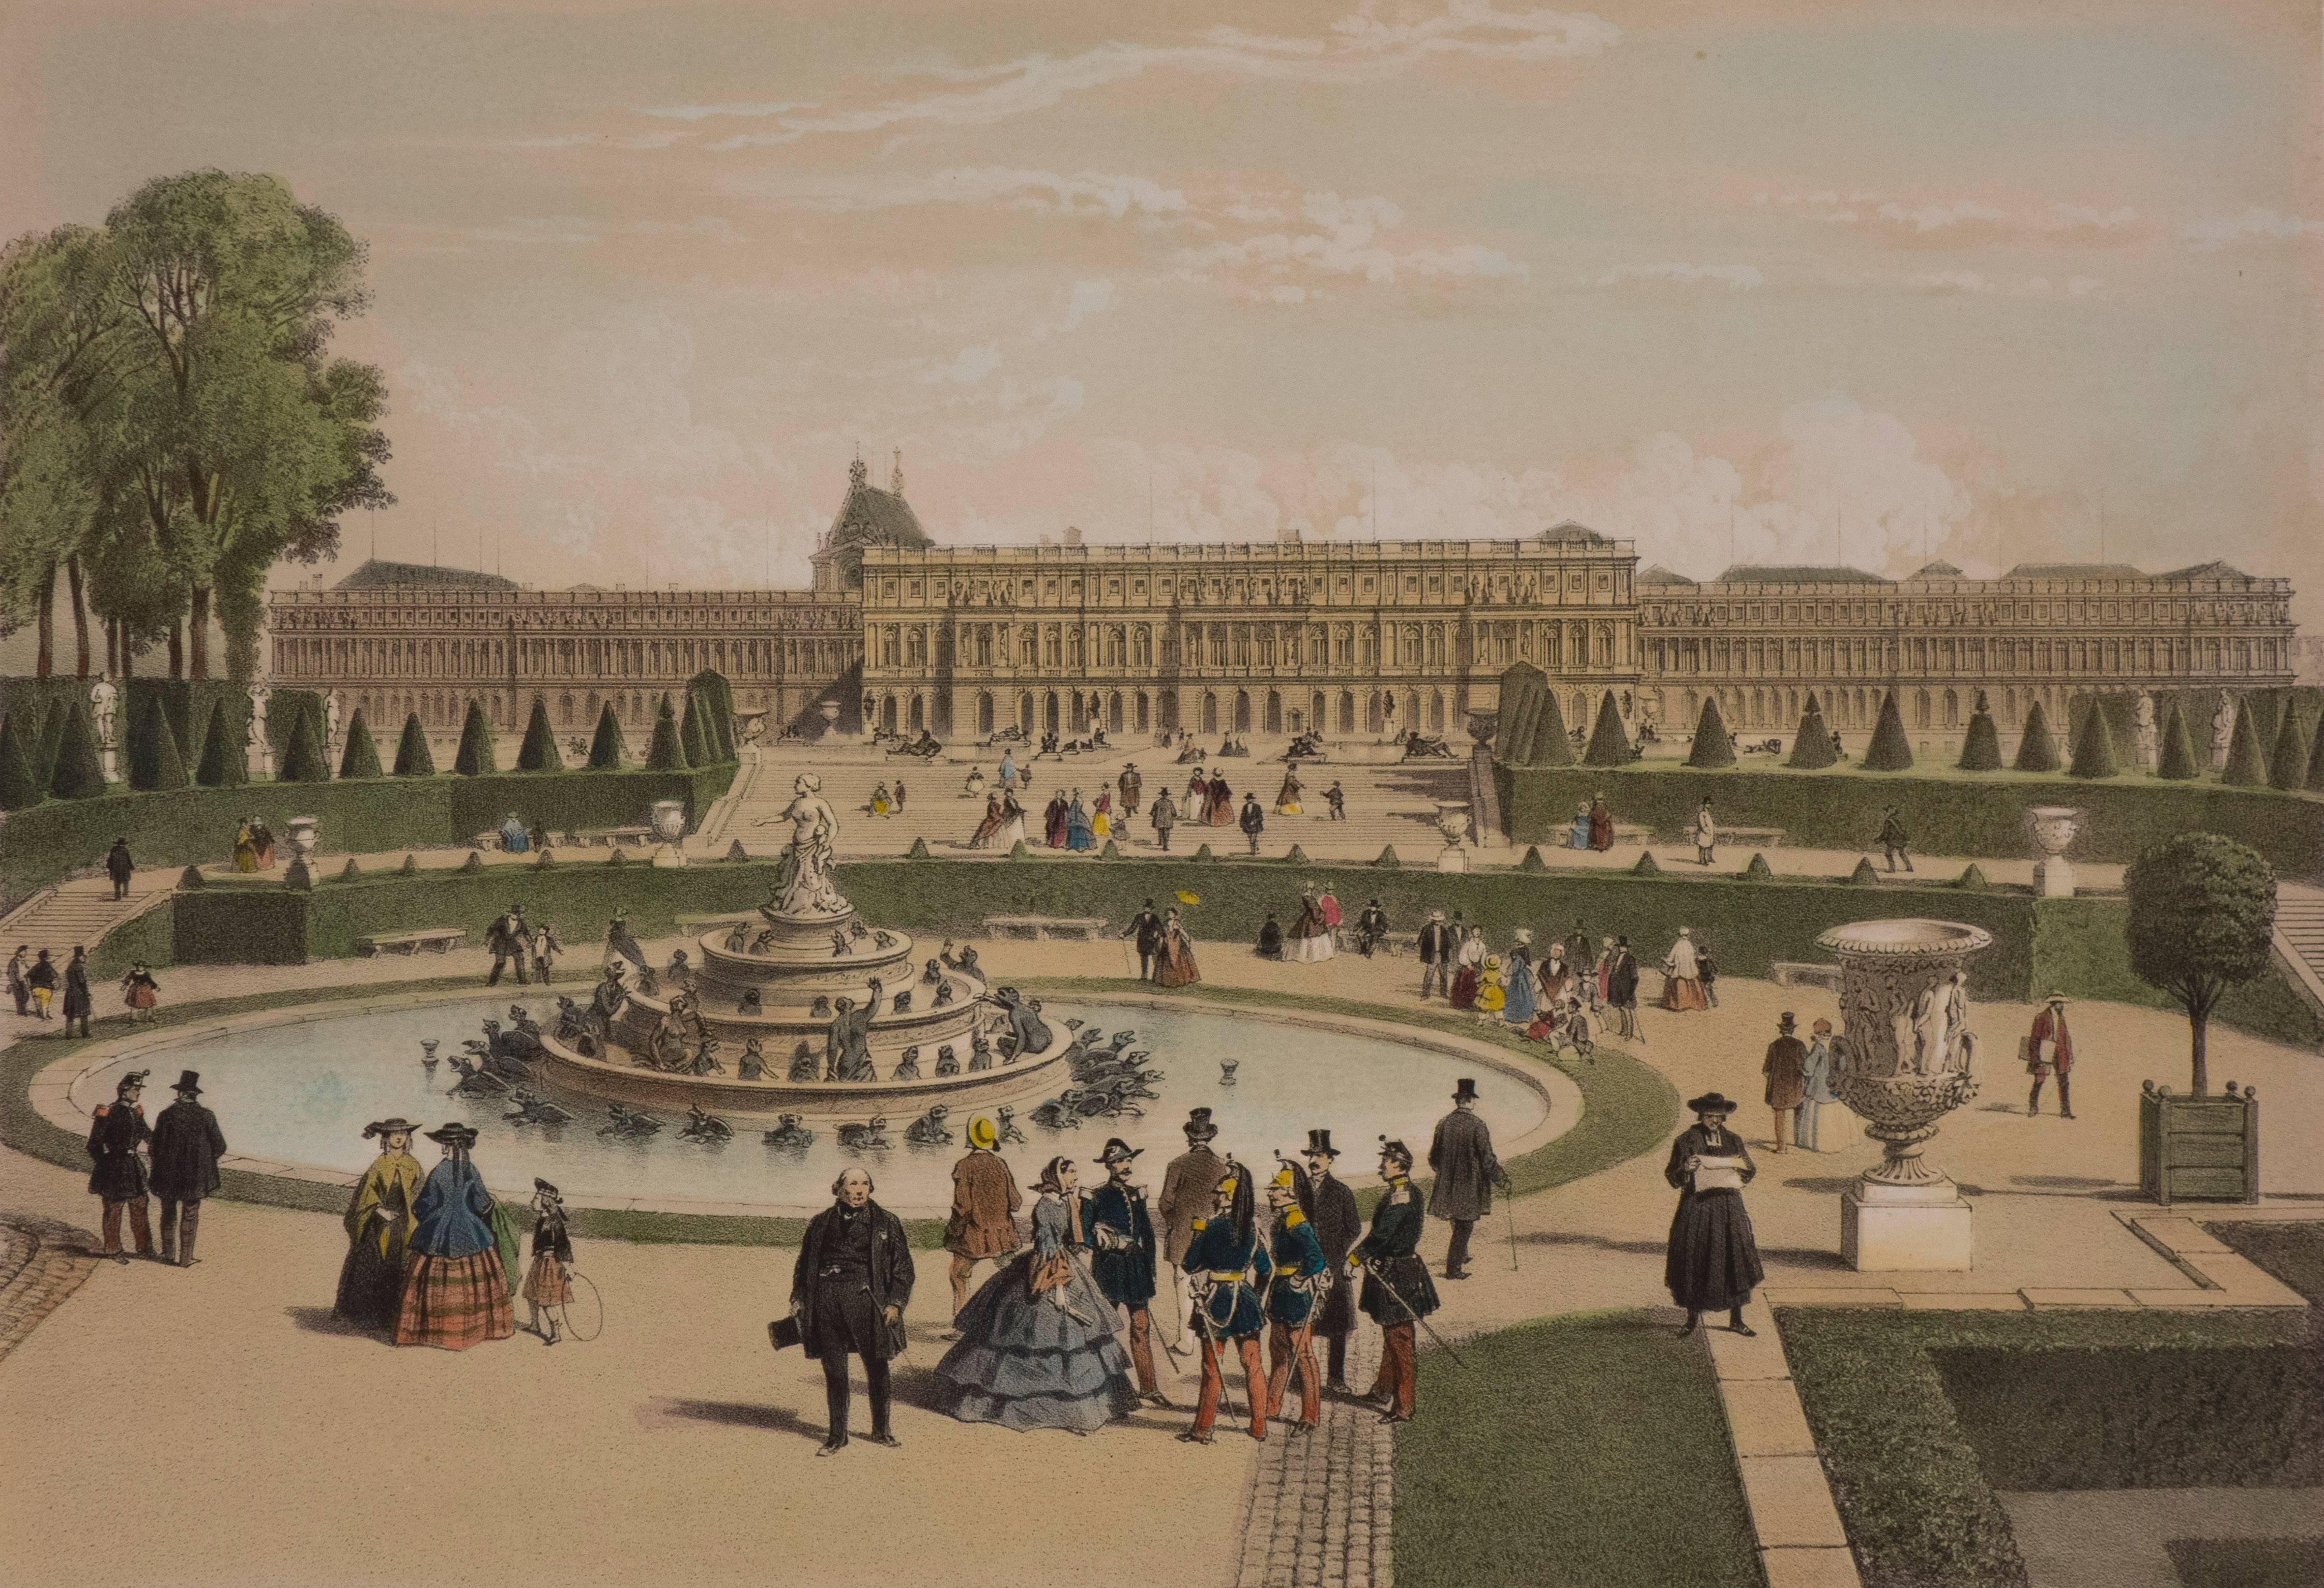 Chateau de Versailles - Print by Unknown